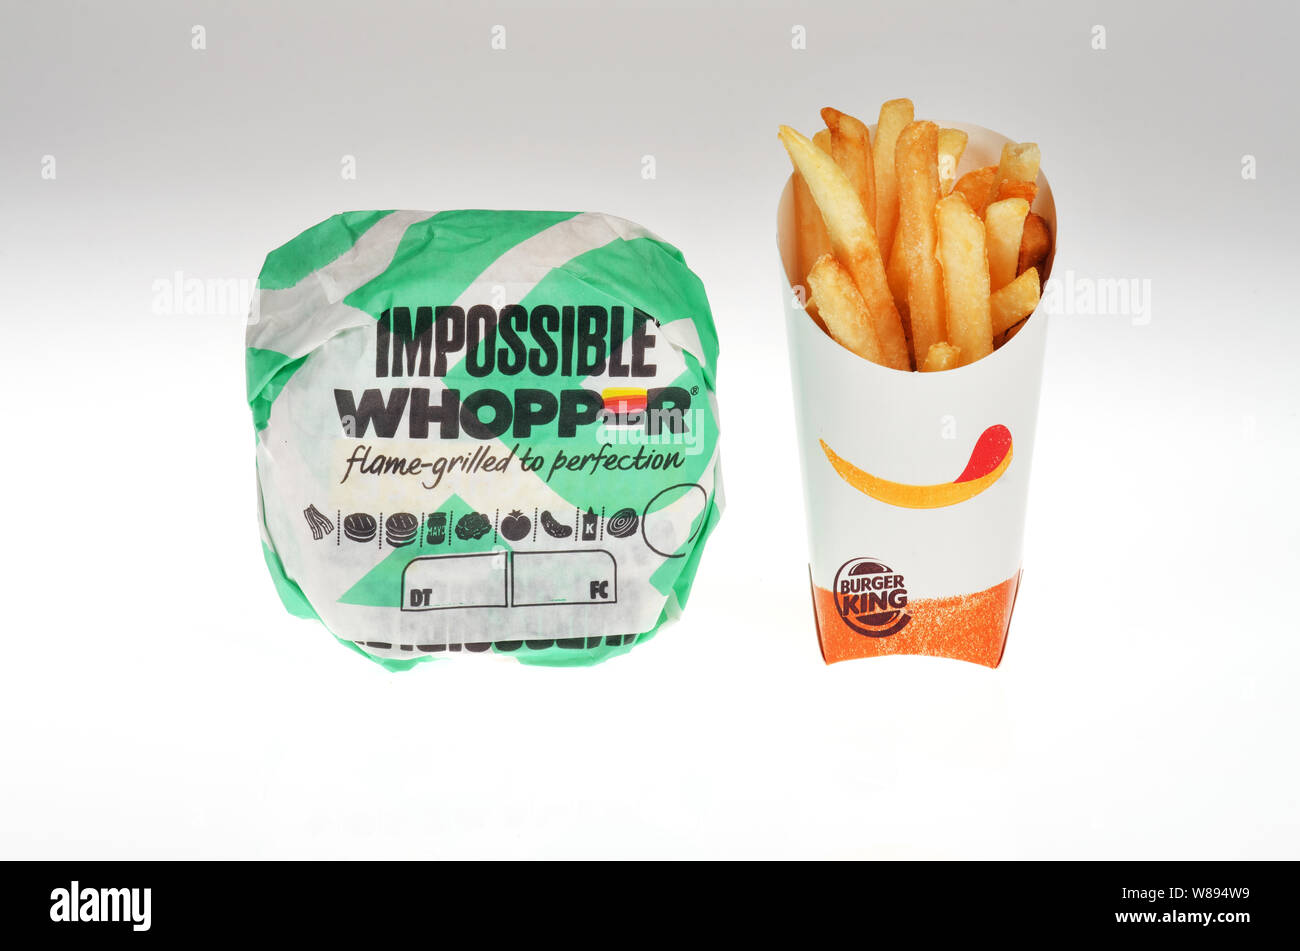 Impossible avec des frites Whopper de Burger King, un végétarien aliments à base de plantes introduites dans le burger à l'échelle nationale nous le 08 août, 2019 Banque D'Images